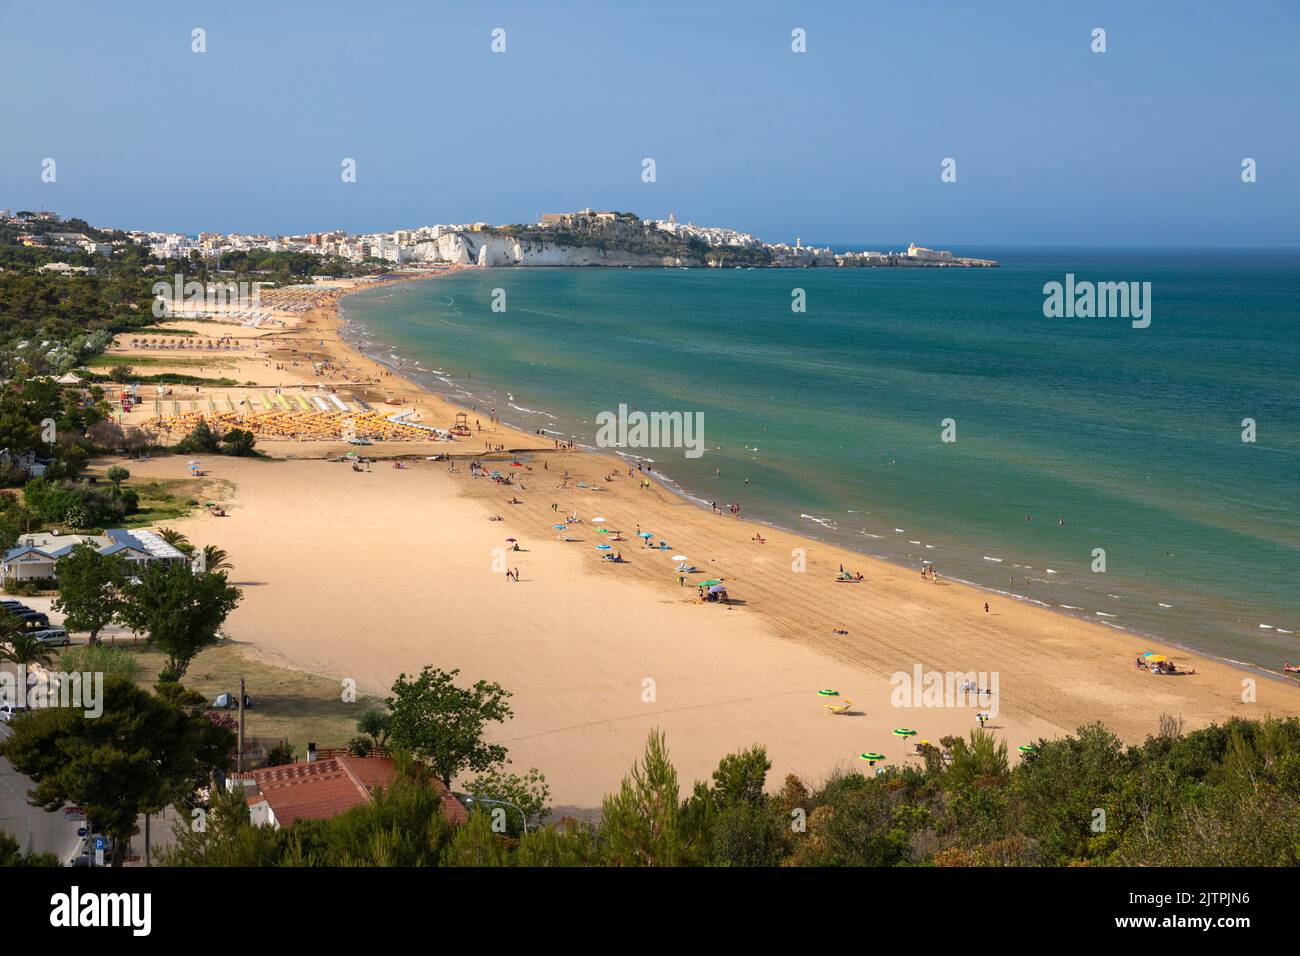 Vista a lo largo de la playa con el casco antiguo de Vieste en la distancia, Vieste, Apulia, Italia Foto de stock